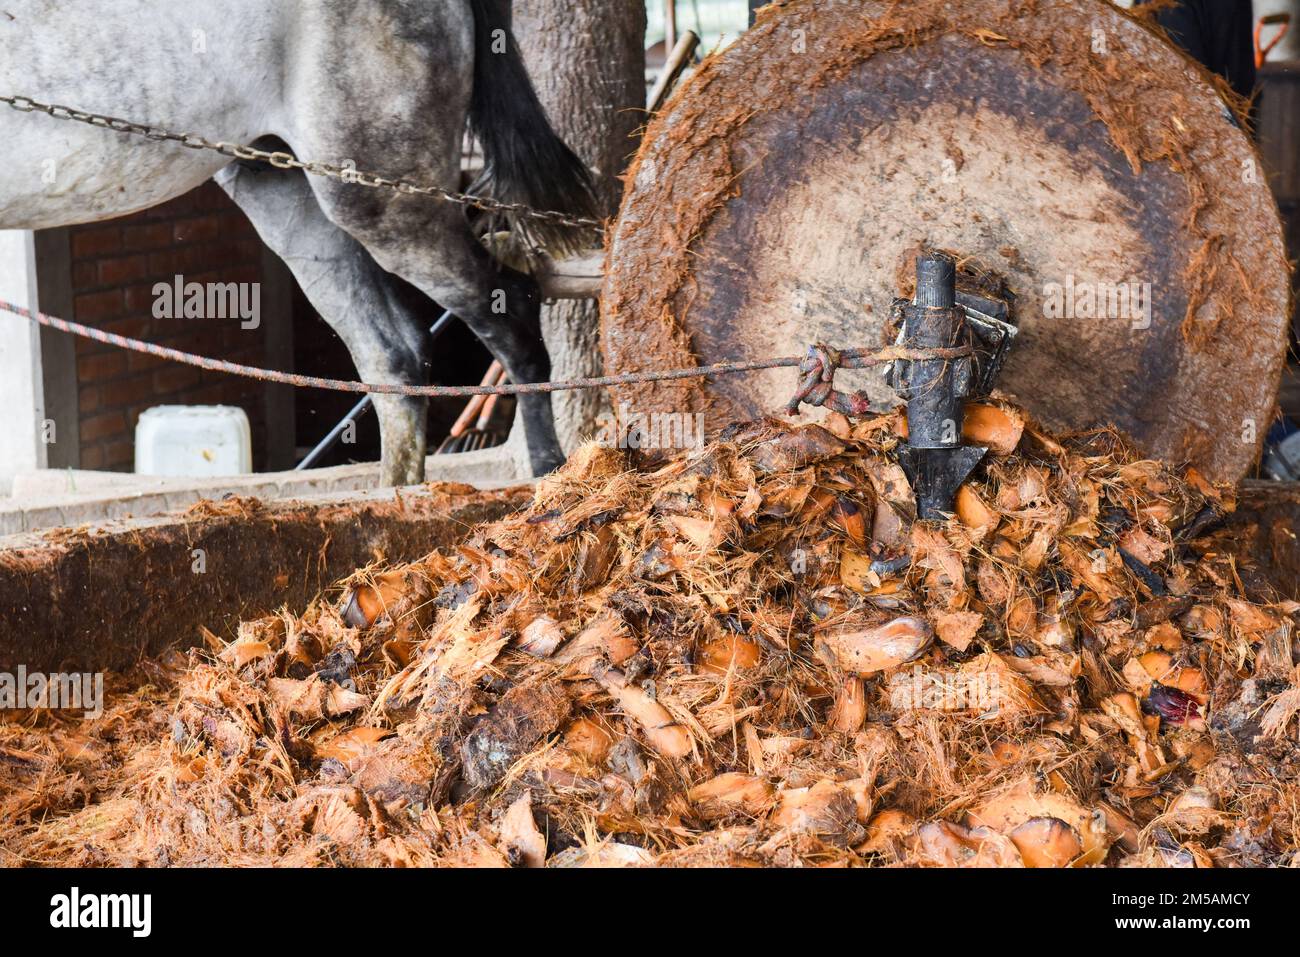 Un cheval tire une roue en pierre géante qui écrase les coeurs d'agave torréfiés dans une distillerie artisanale de mezcal, dans l'État d'Oaxaca, au Mexique Banque D'Images